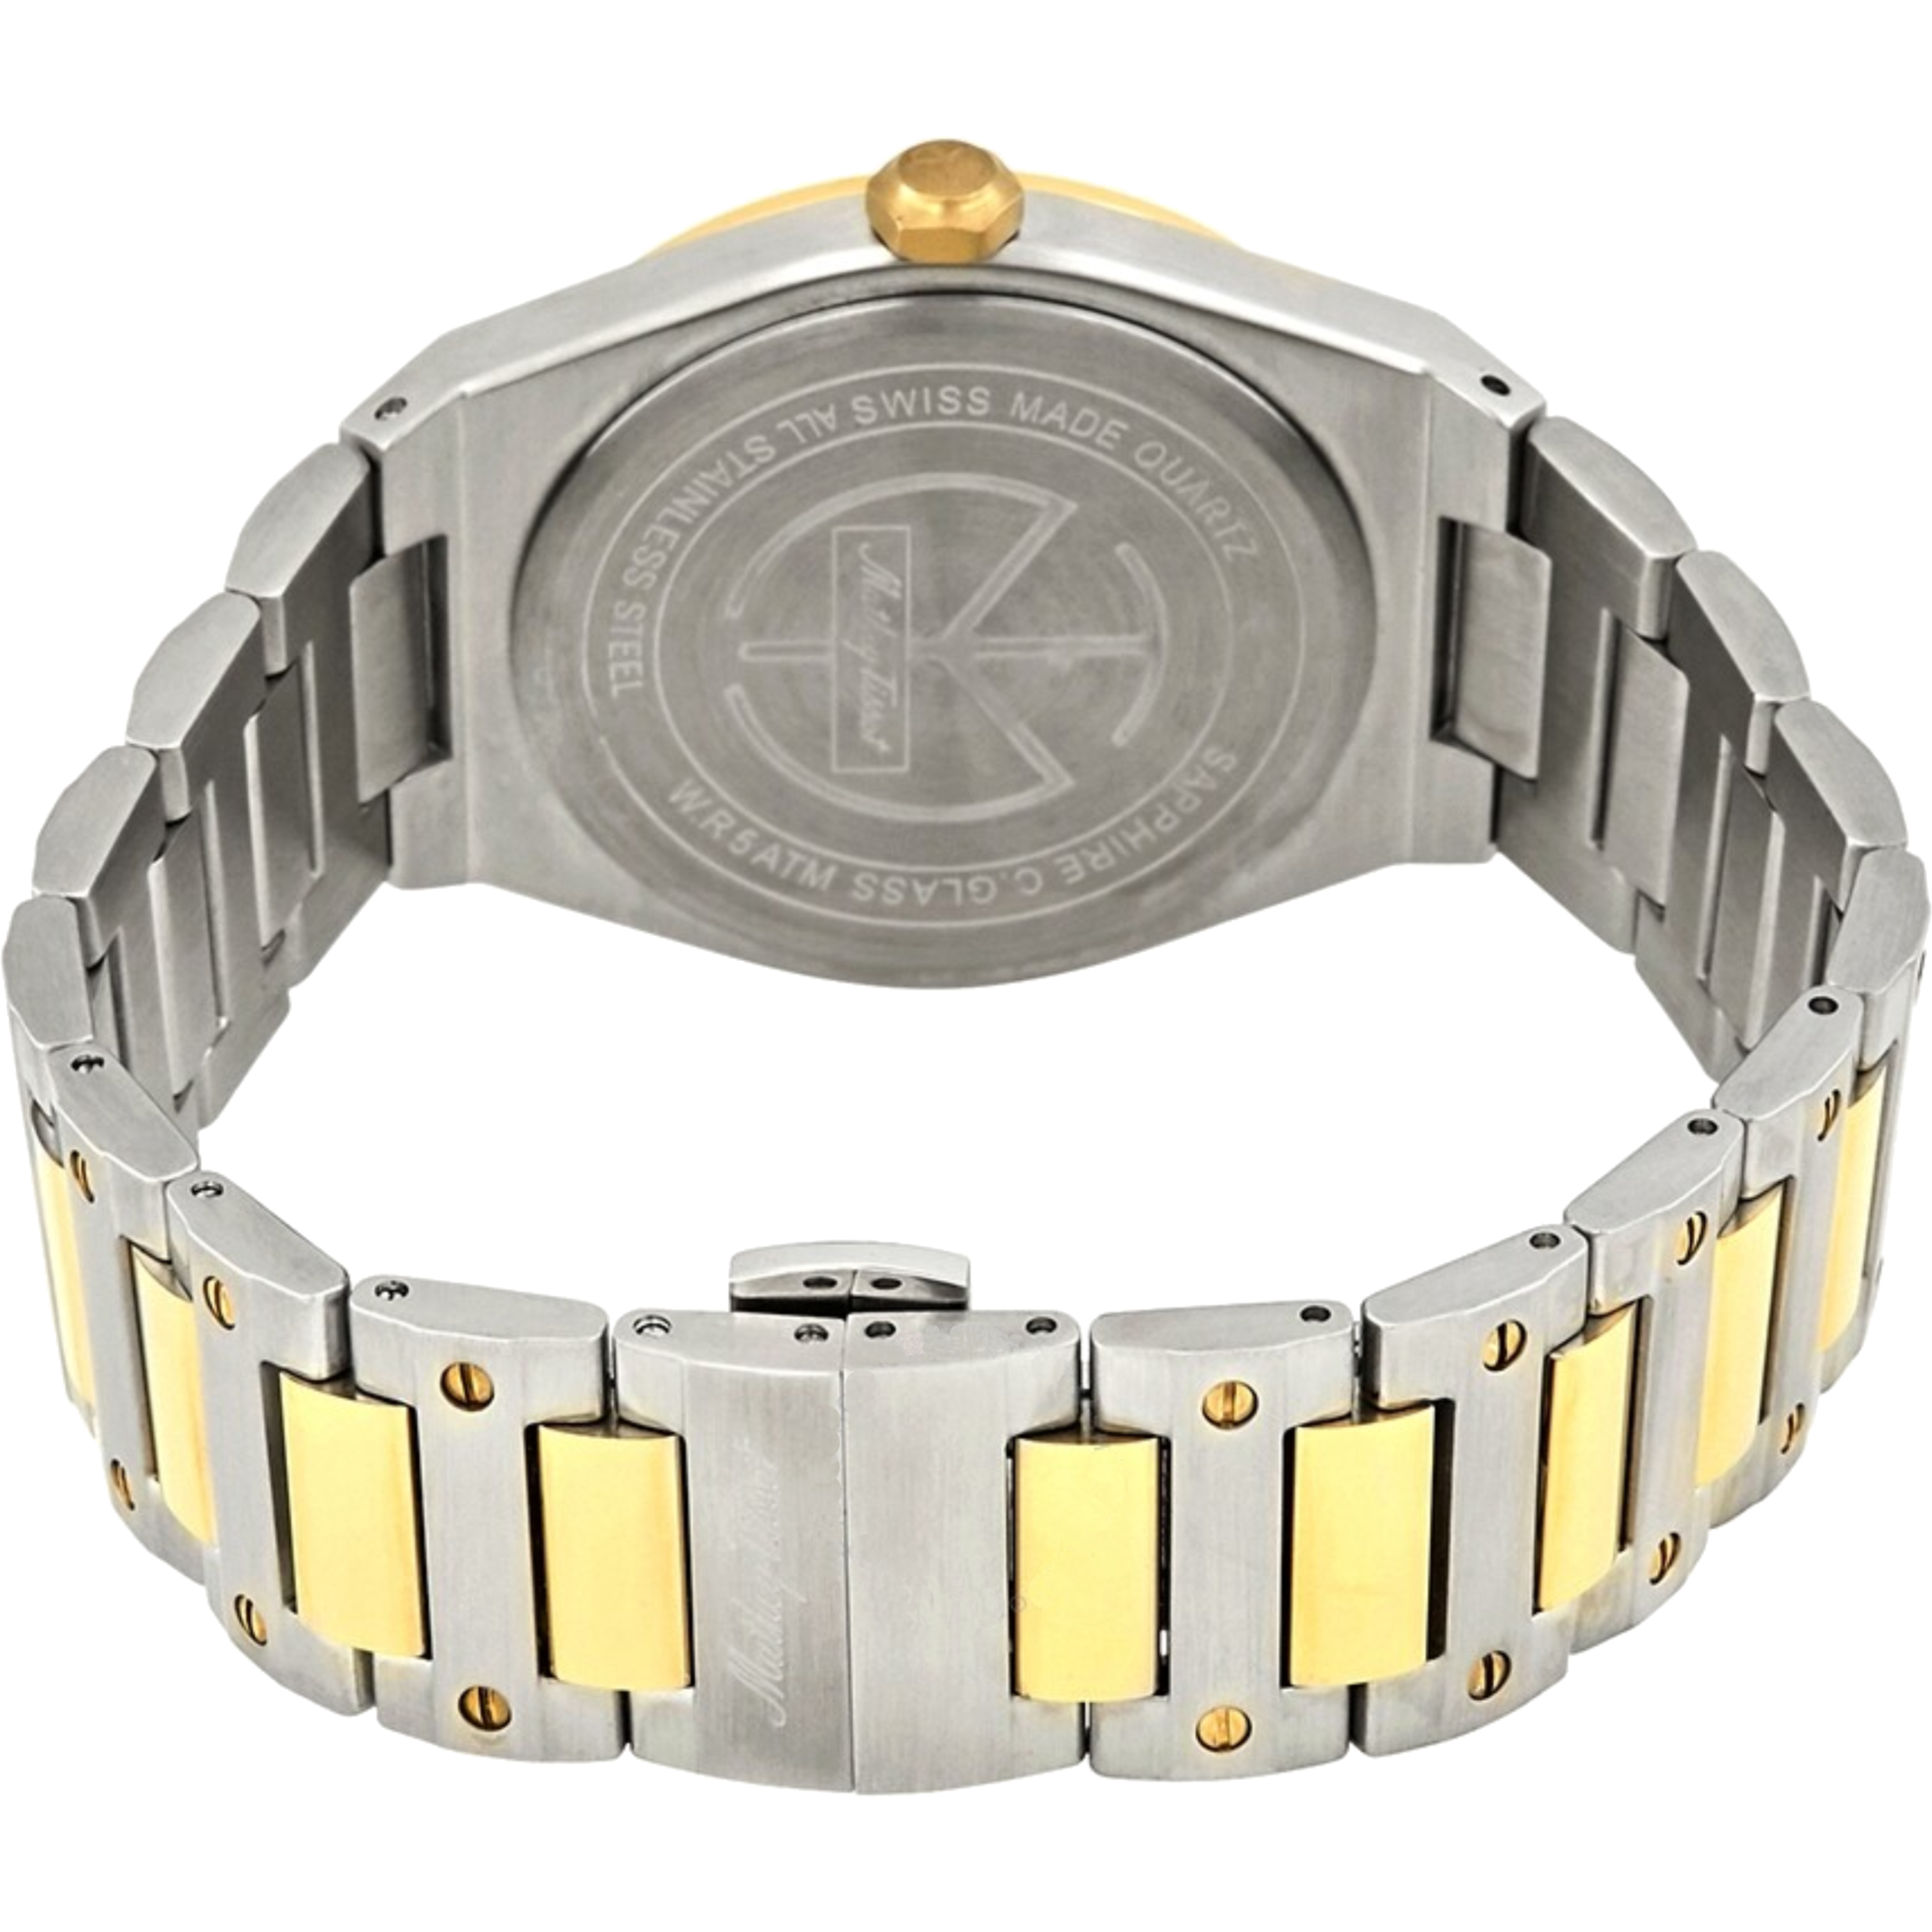 שעון יד לגבר Mathey Tissot H680BDI 41mm צבע כסף/זהב/זכוכית ספיר - אחריות לשנתיים